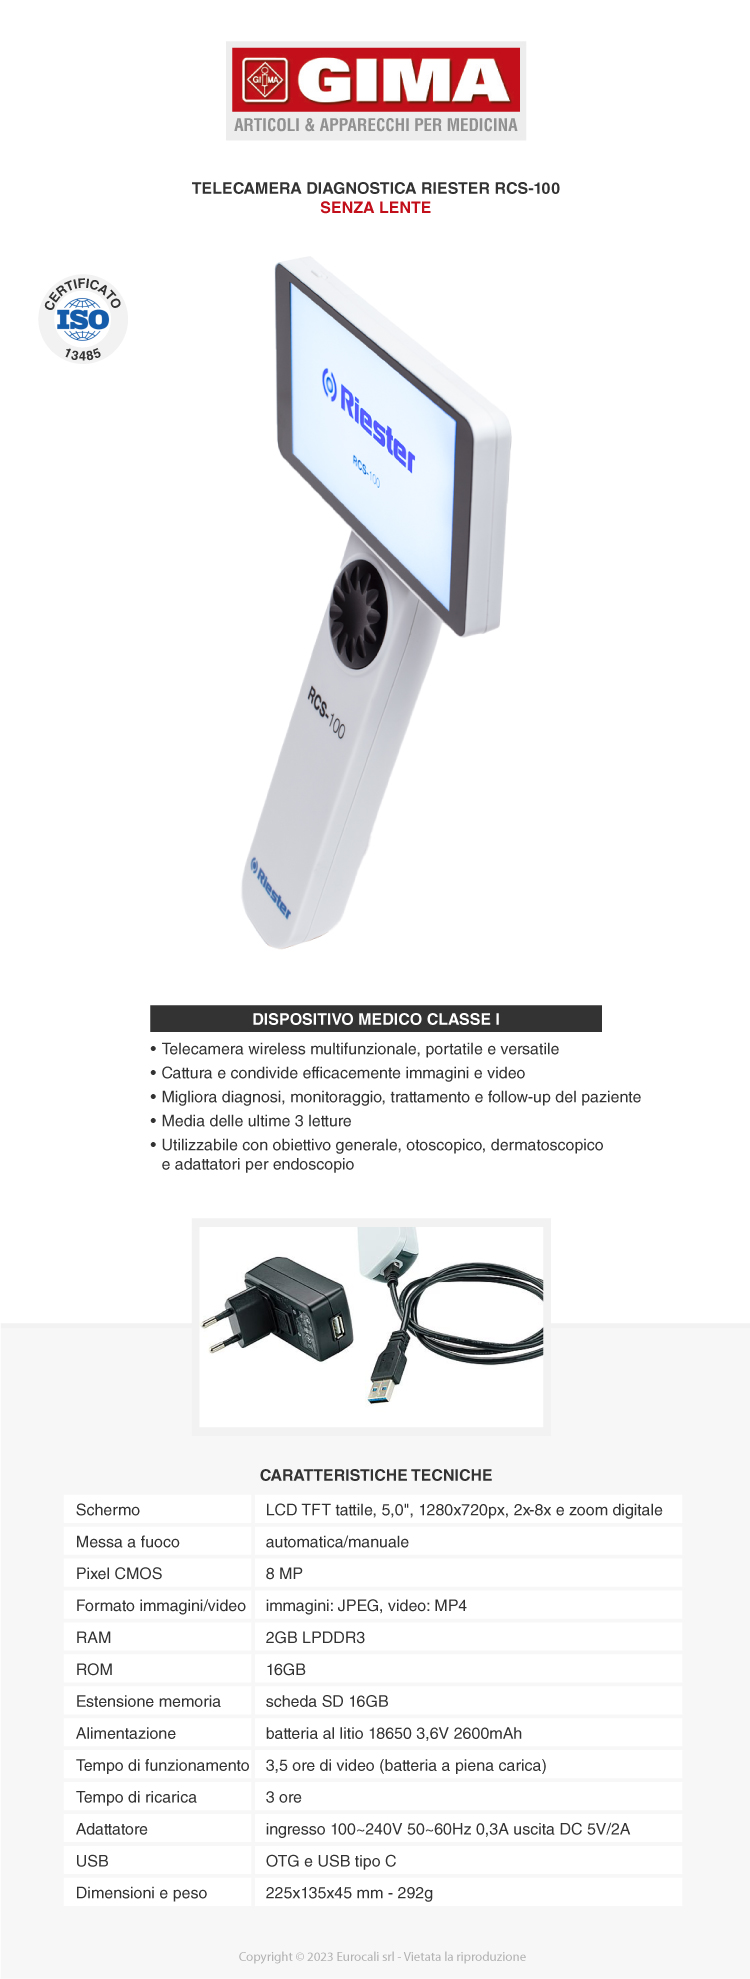 Gima Riester RCS-100 telecamera medicale multifunzionale Wi-Fi con display LCD touch senza obiettivo